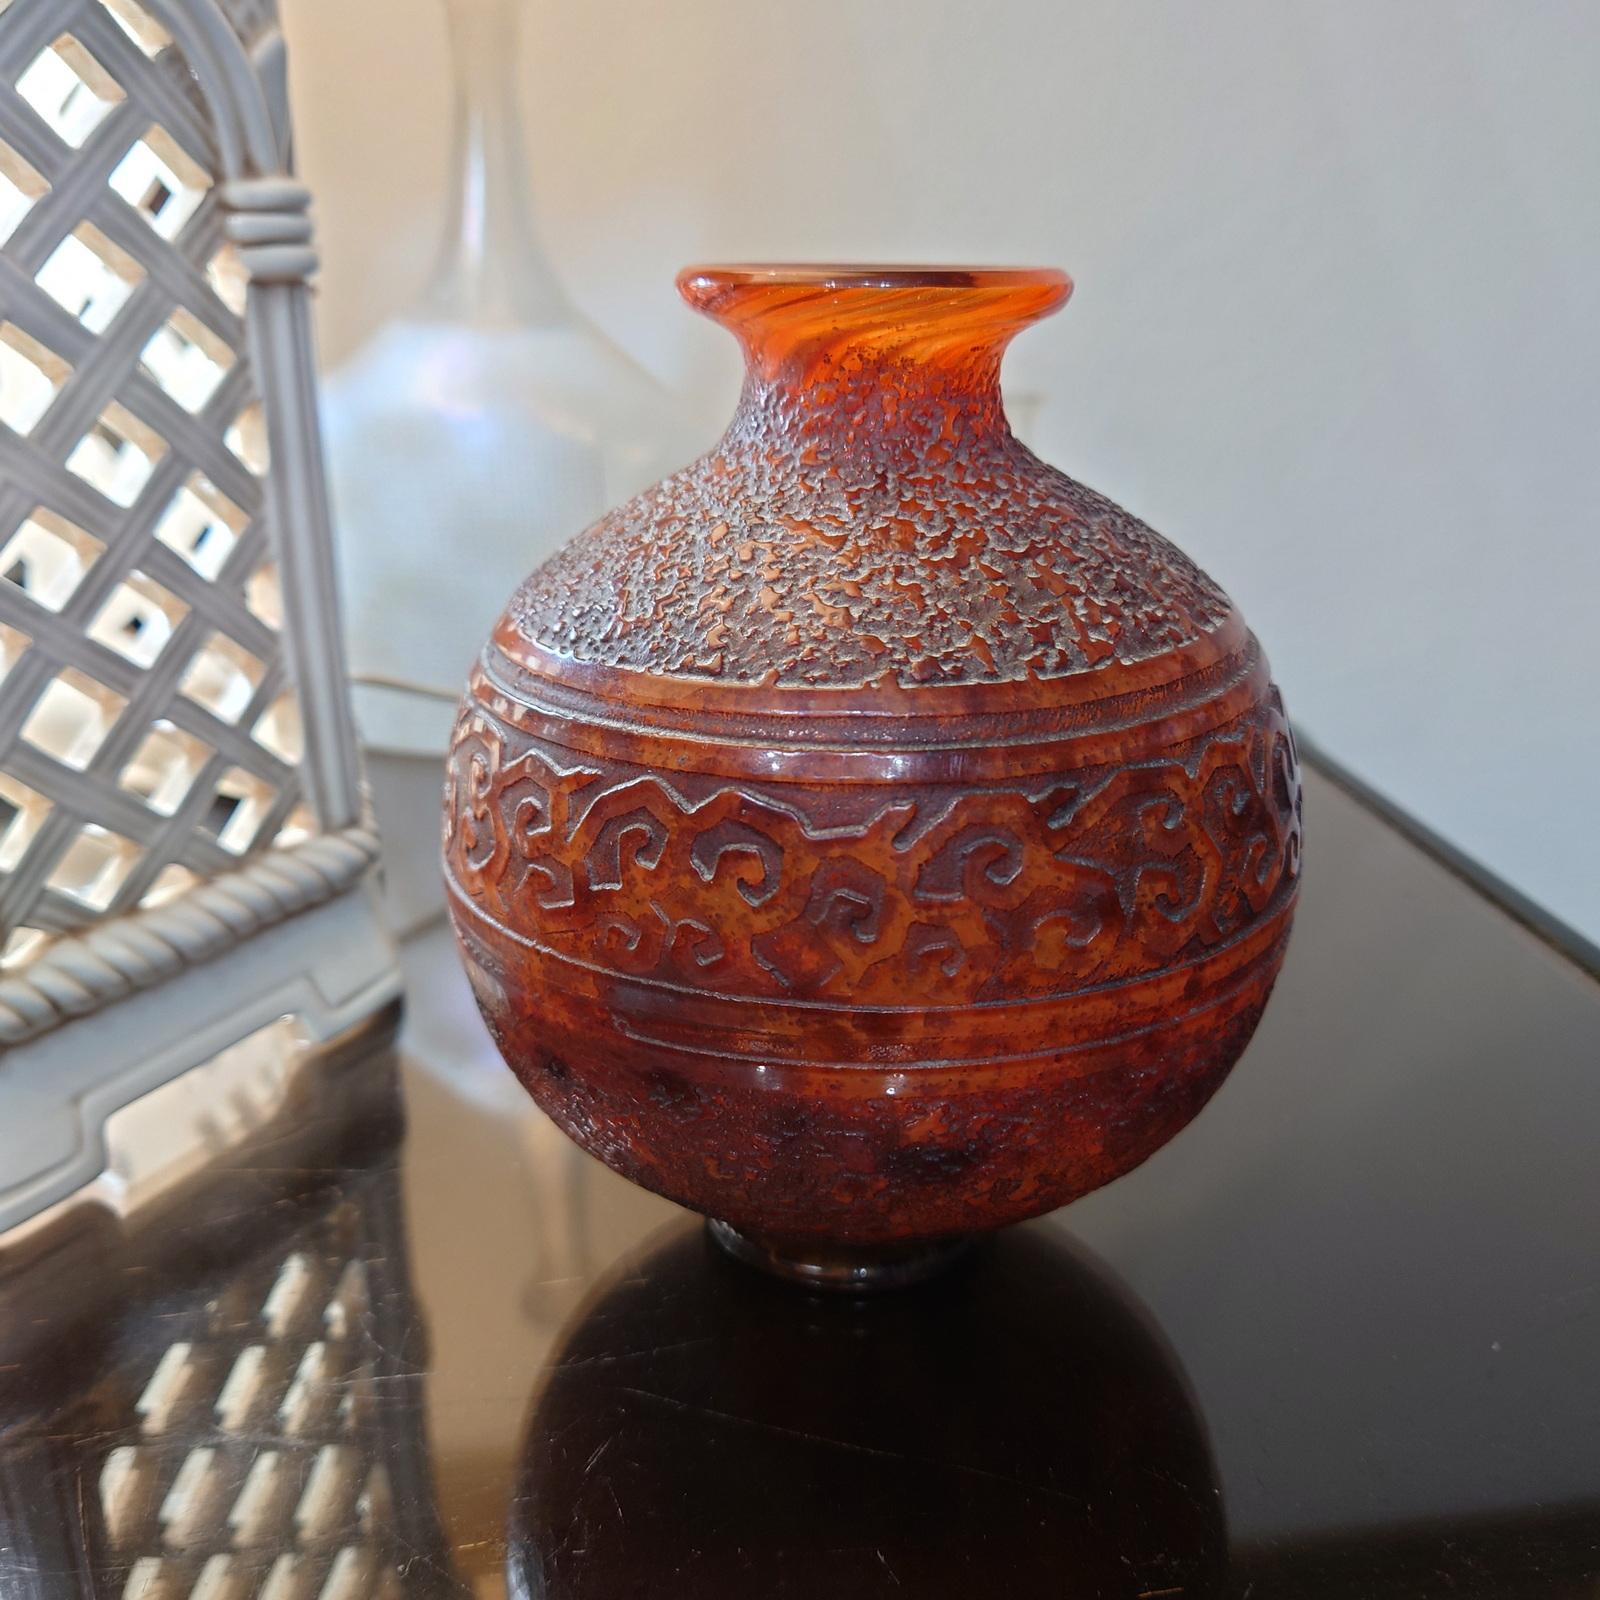 Vase en verre Art déco de Daum Nancy, en forme de boule, reposant sur une base ronde, avec une bouche étroite et évasée.
Ce vase boule est en verre teinté rouge-orange, décoré de poudres intercalaires brunes et gravé d'une frise de rinceaux sur un